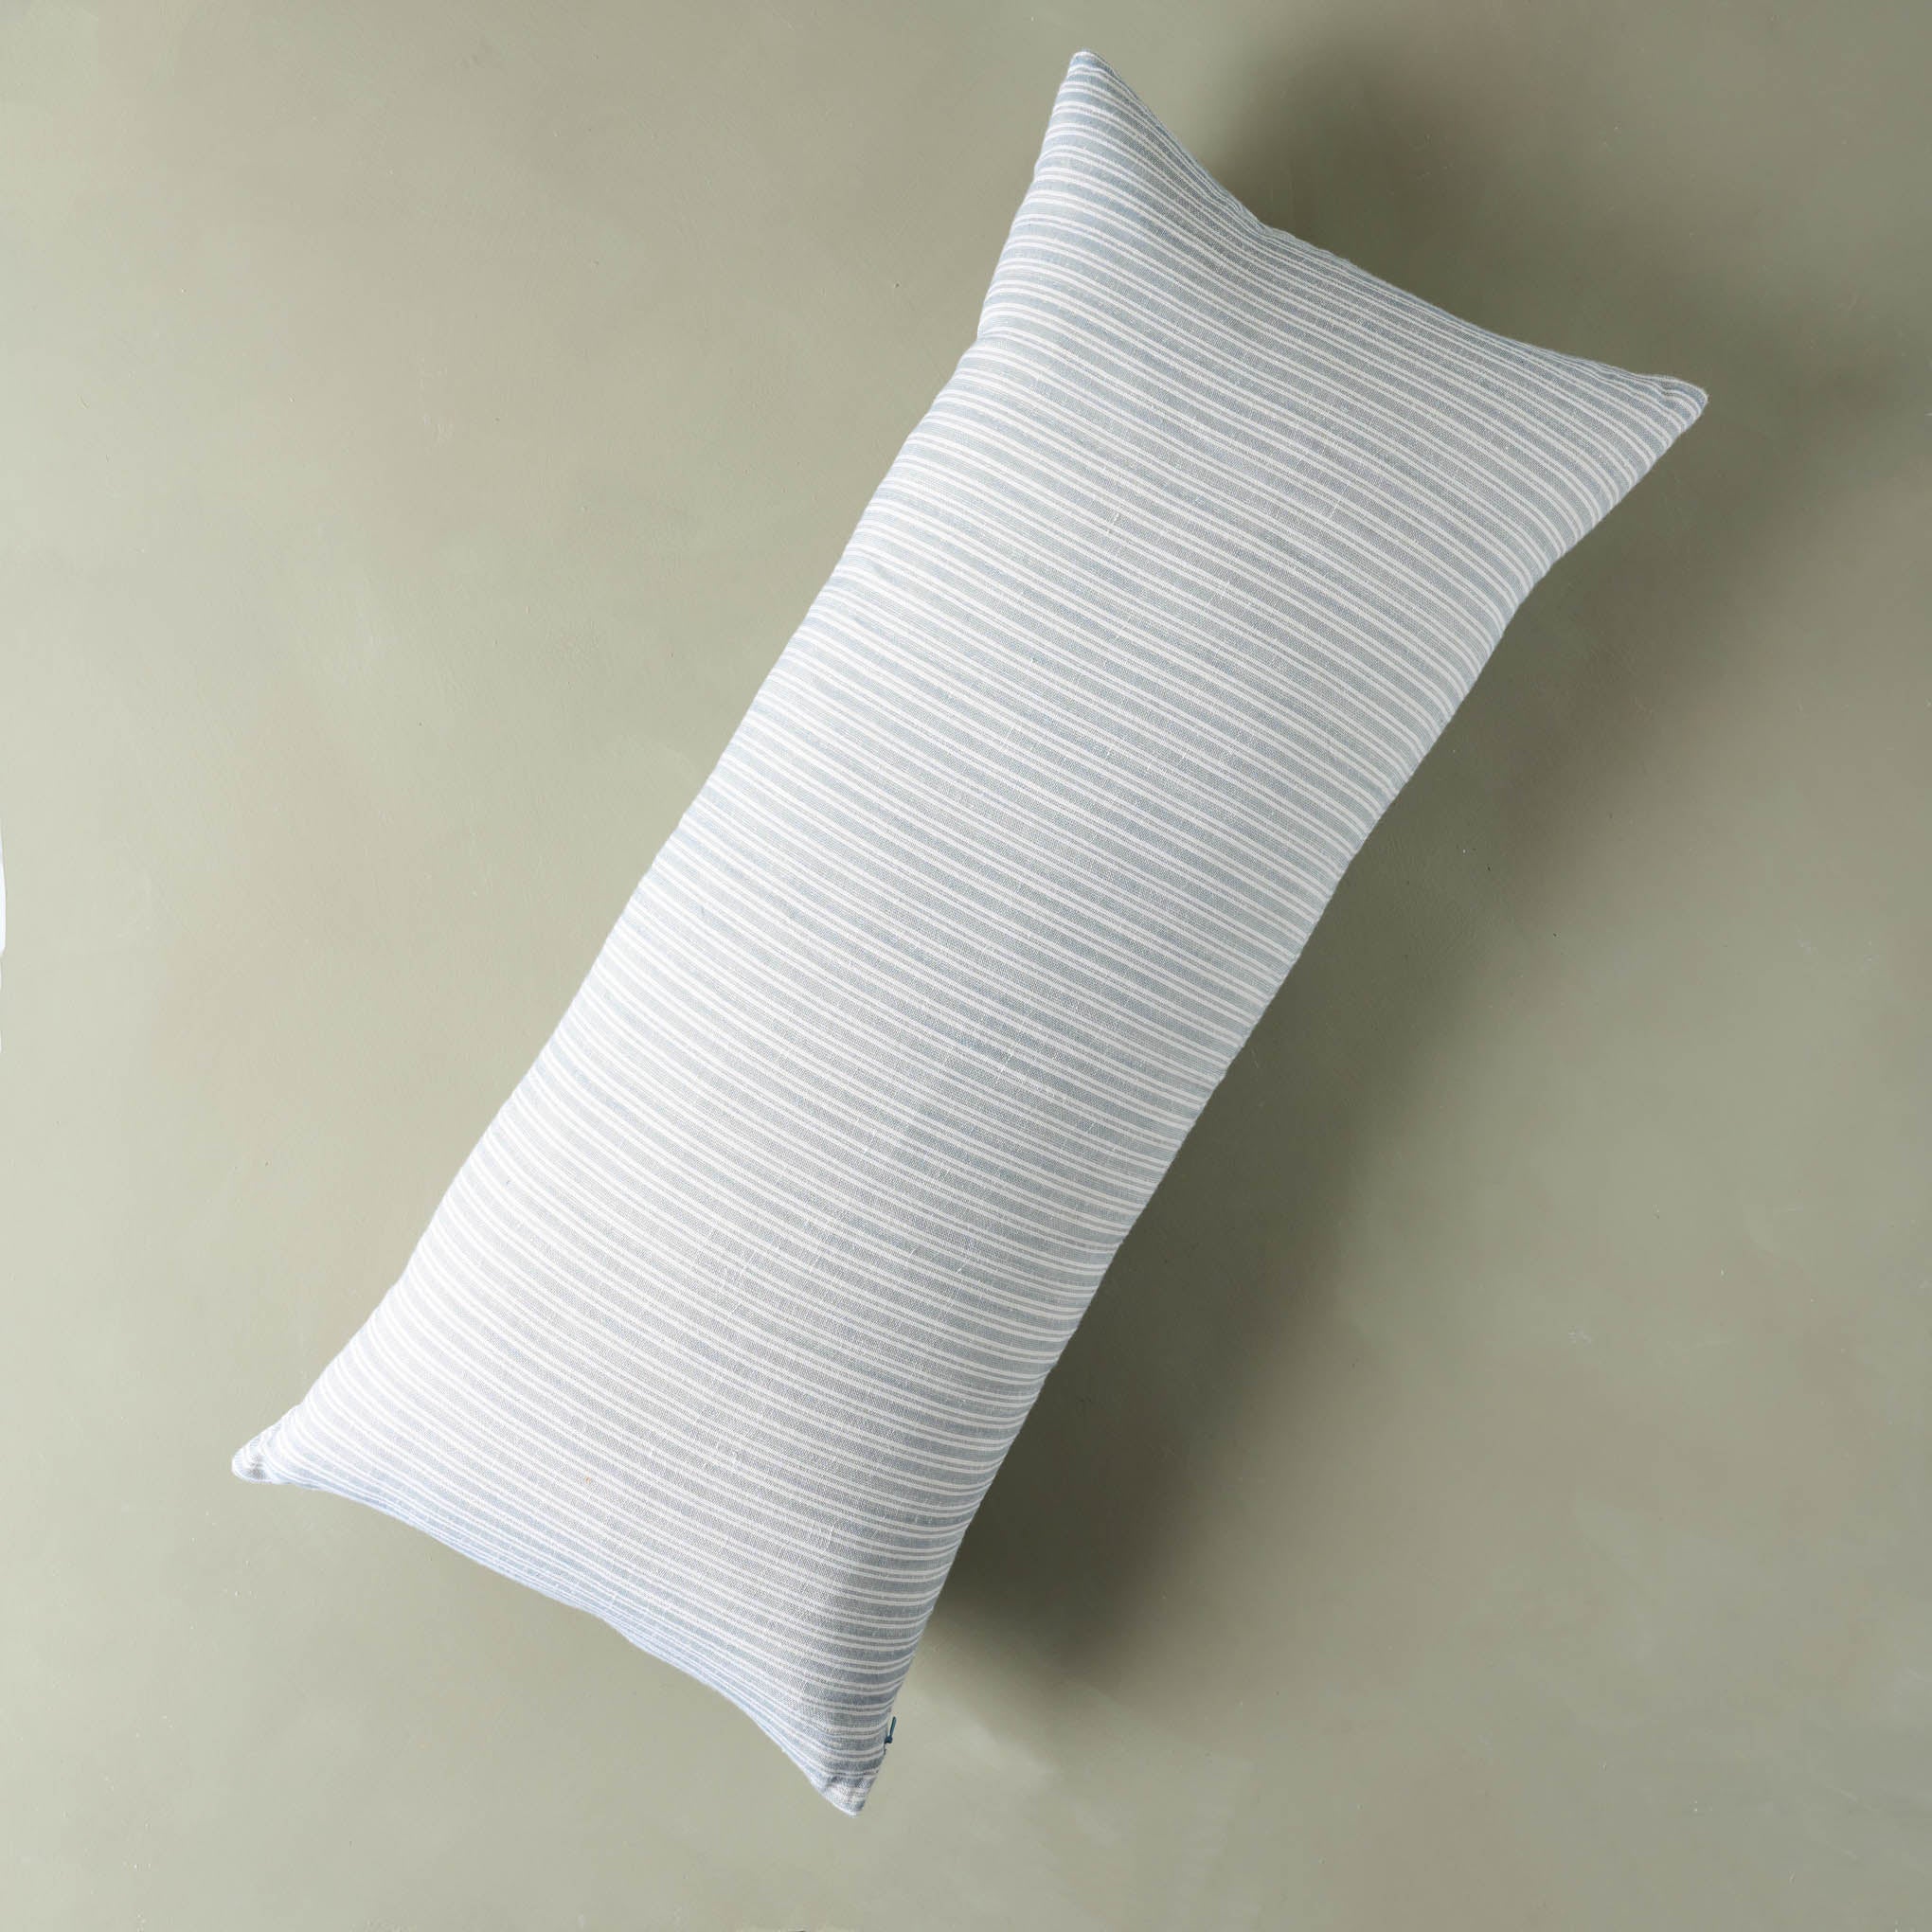 Linen Pillow Cover, Lumbar Pillow, Extra Long Lumbar Pillow